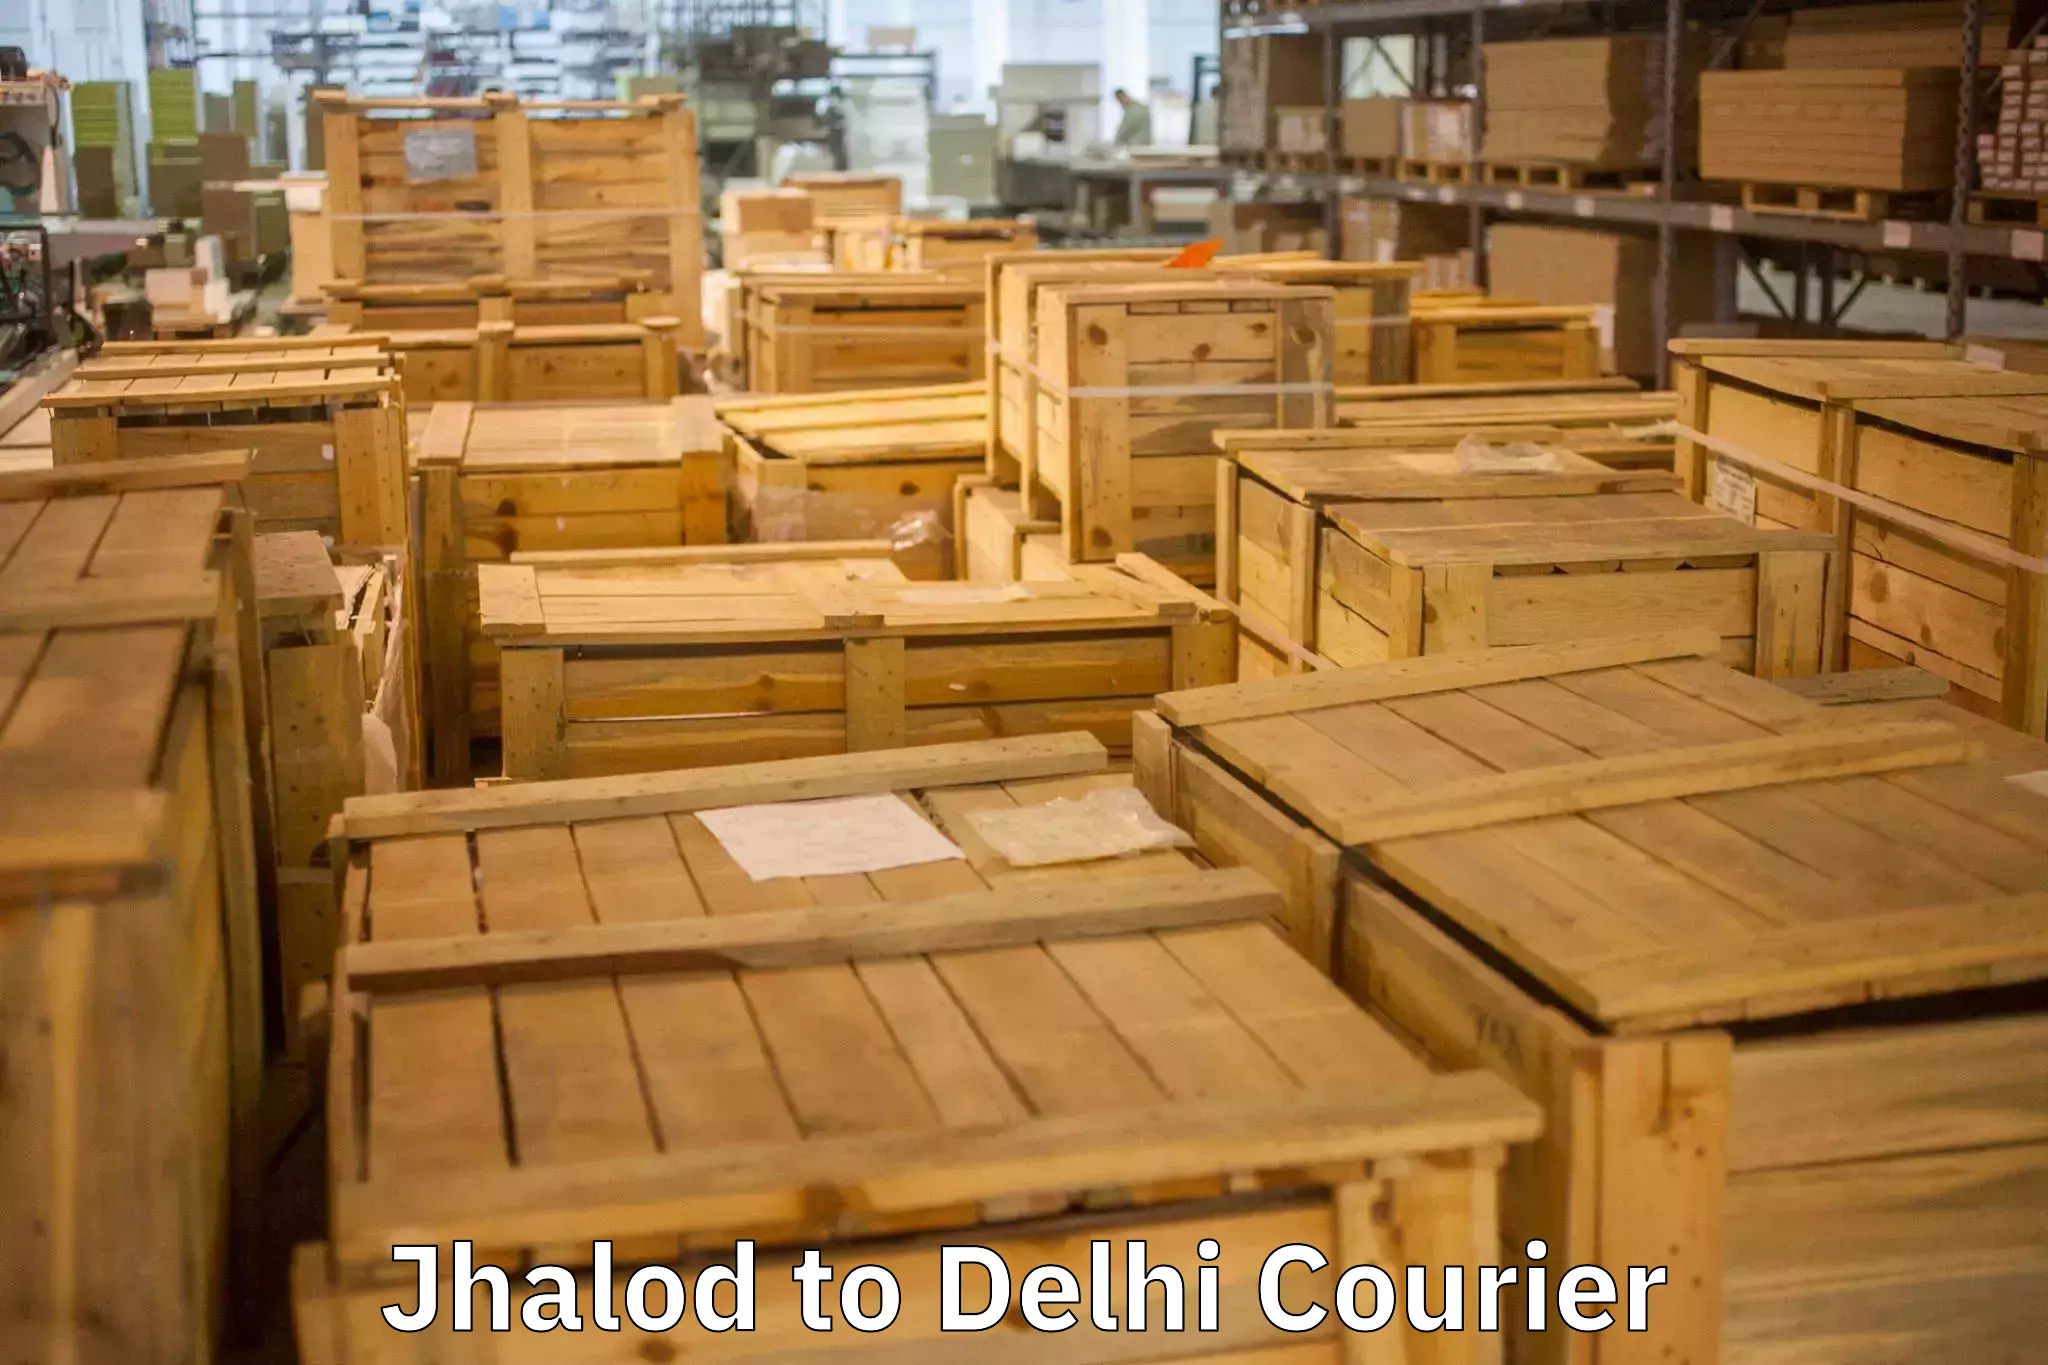 Household goods transport service Jhalod to Delhi